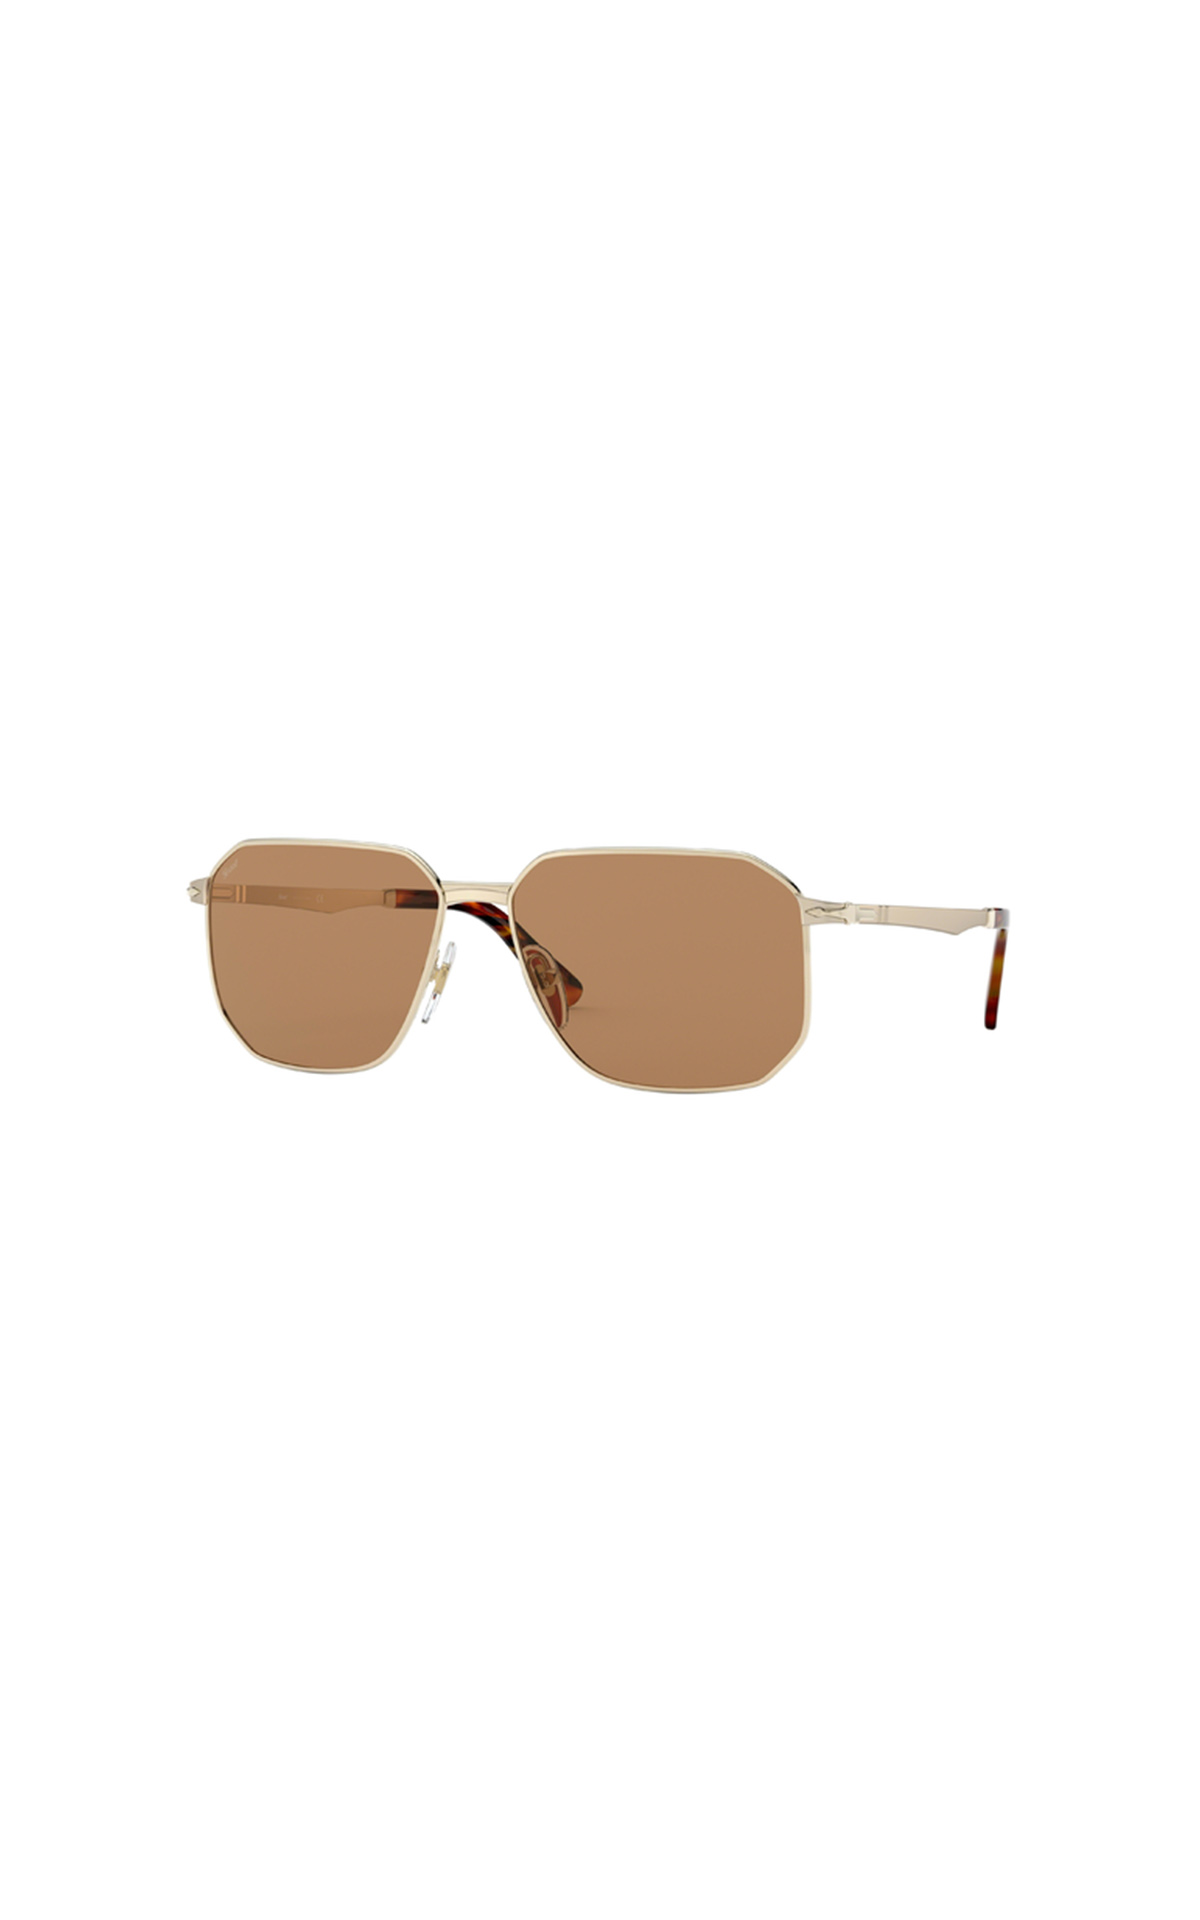 Persol gold sunglasses